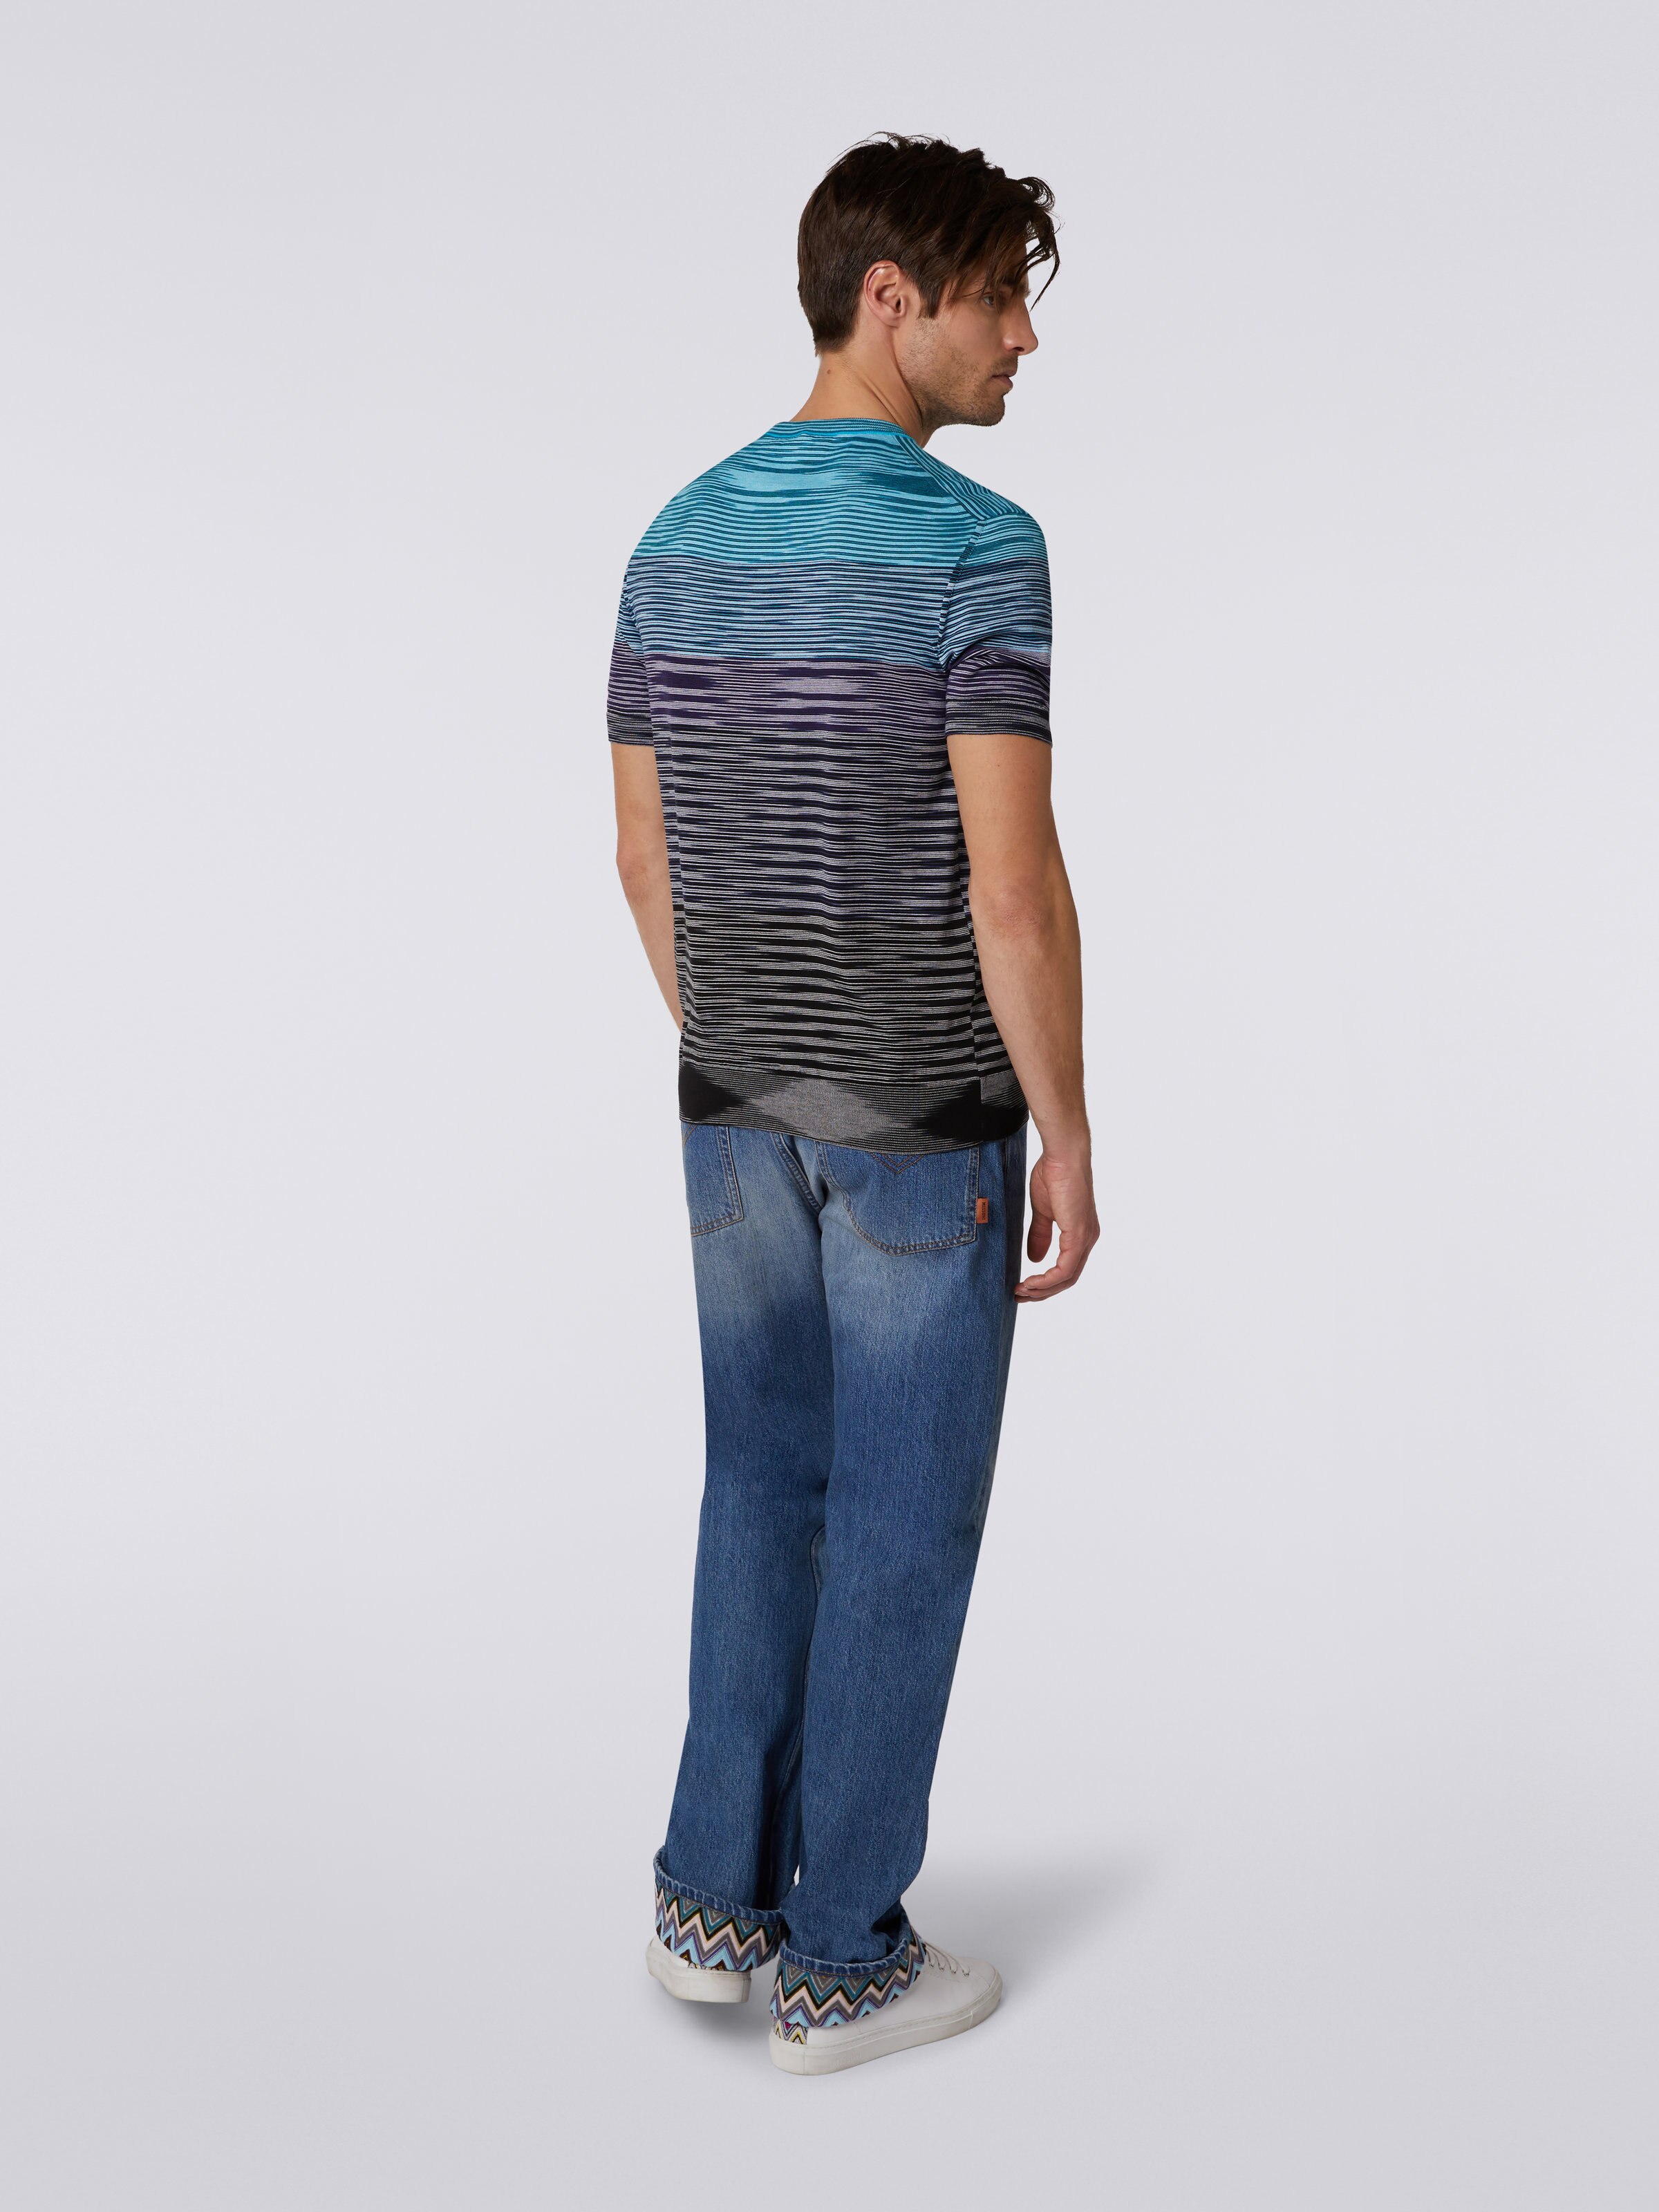 Kurzärmeliges T-Shirt aus Baumwollstrick mit Rundhalsausschnitt und Dégradé-Streifen, Blau, Violett & Schwarz - 3